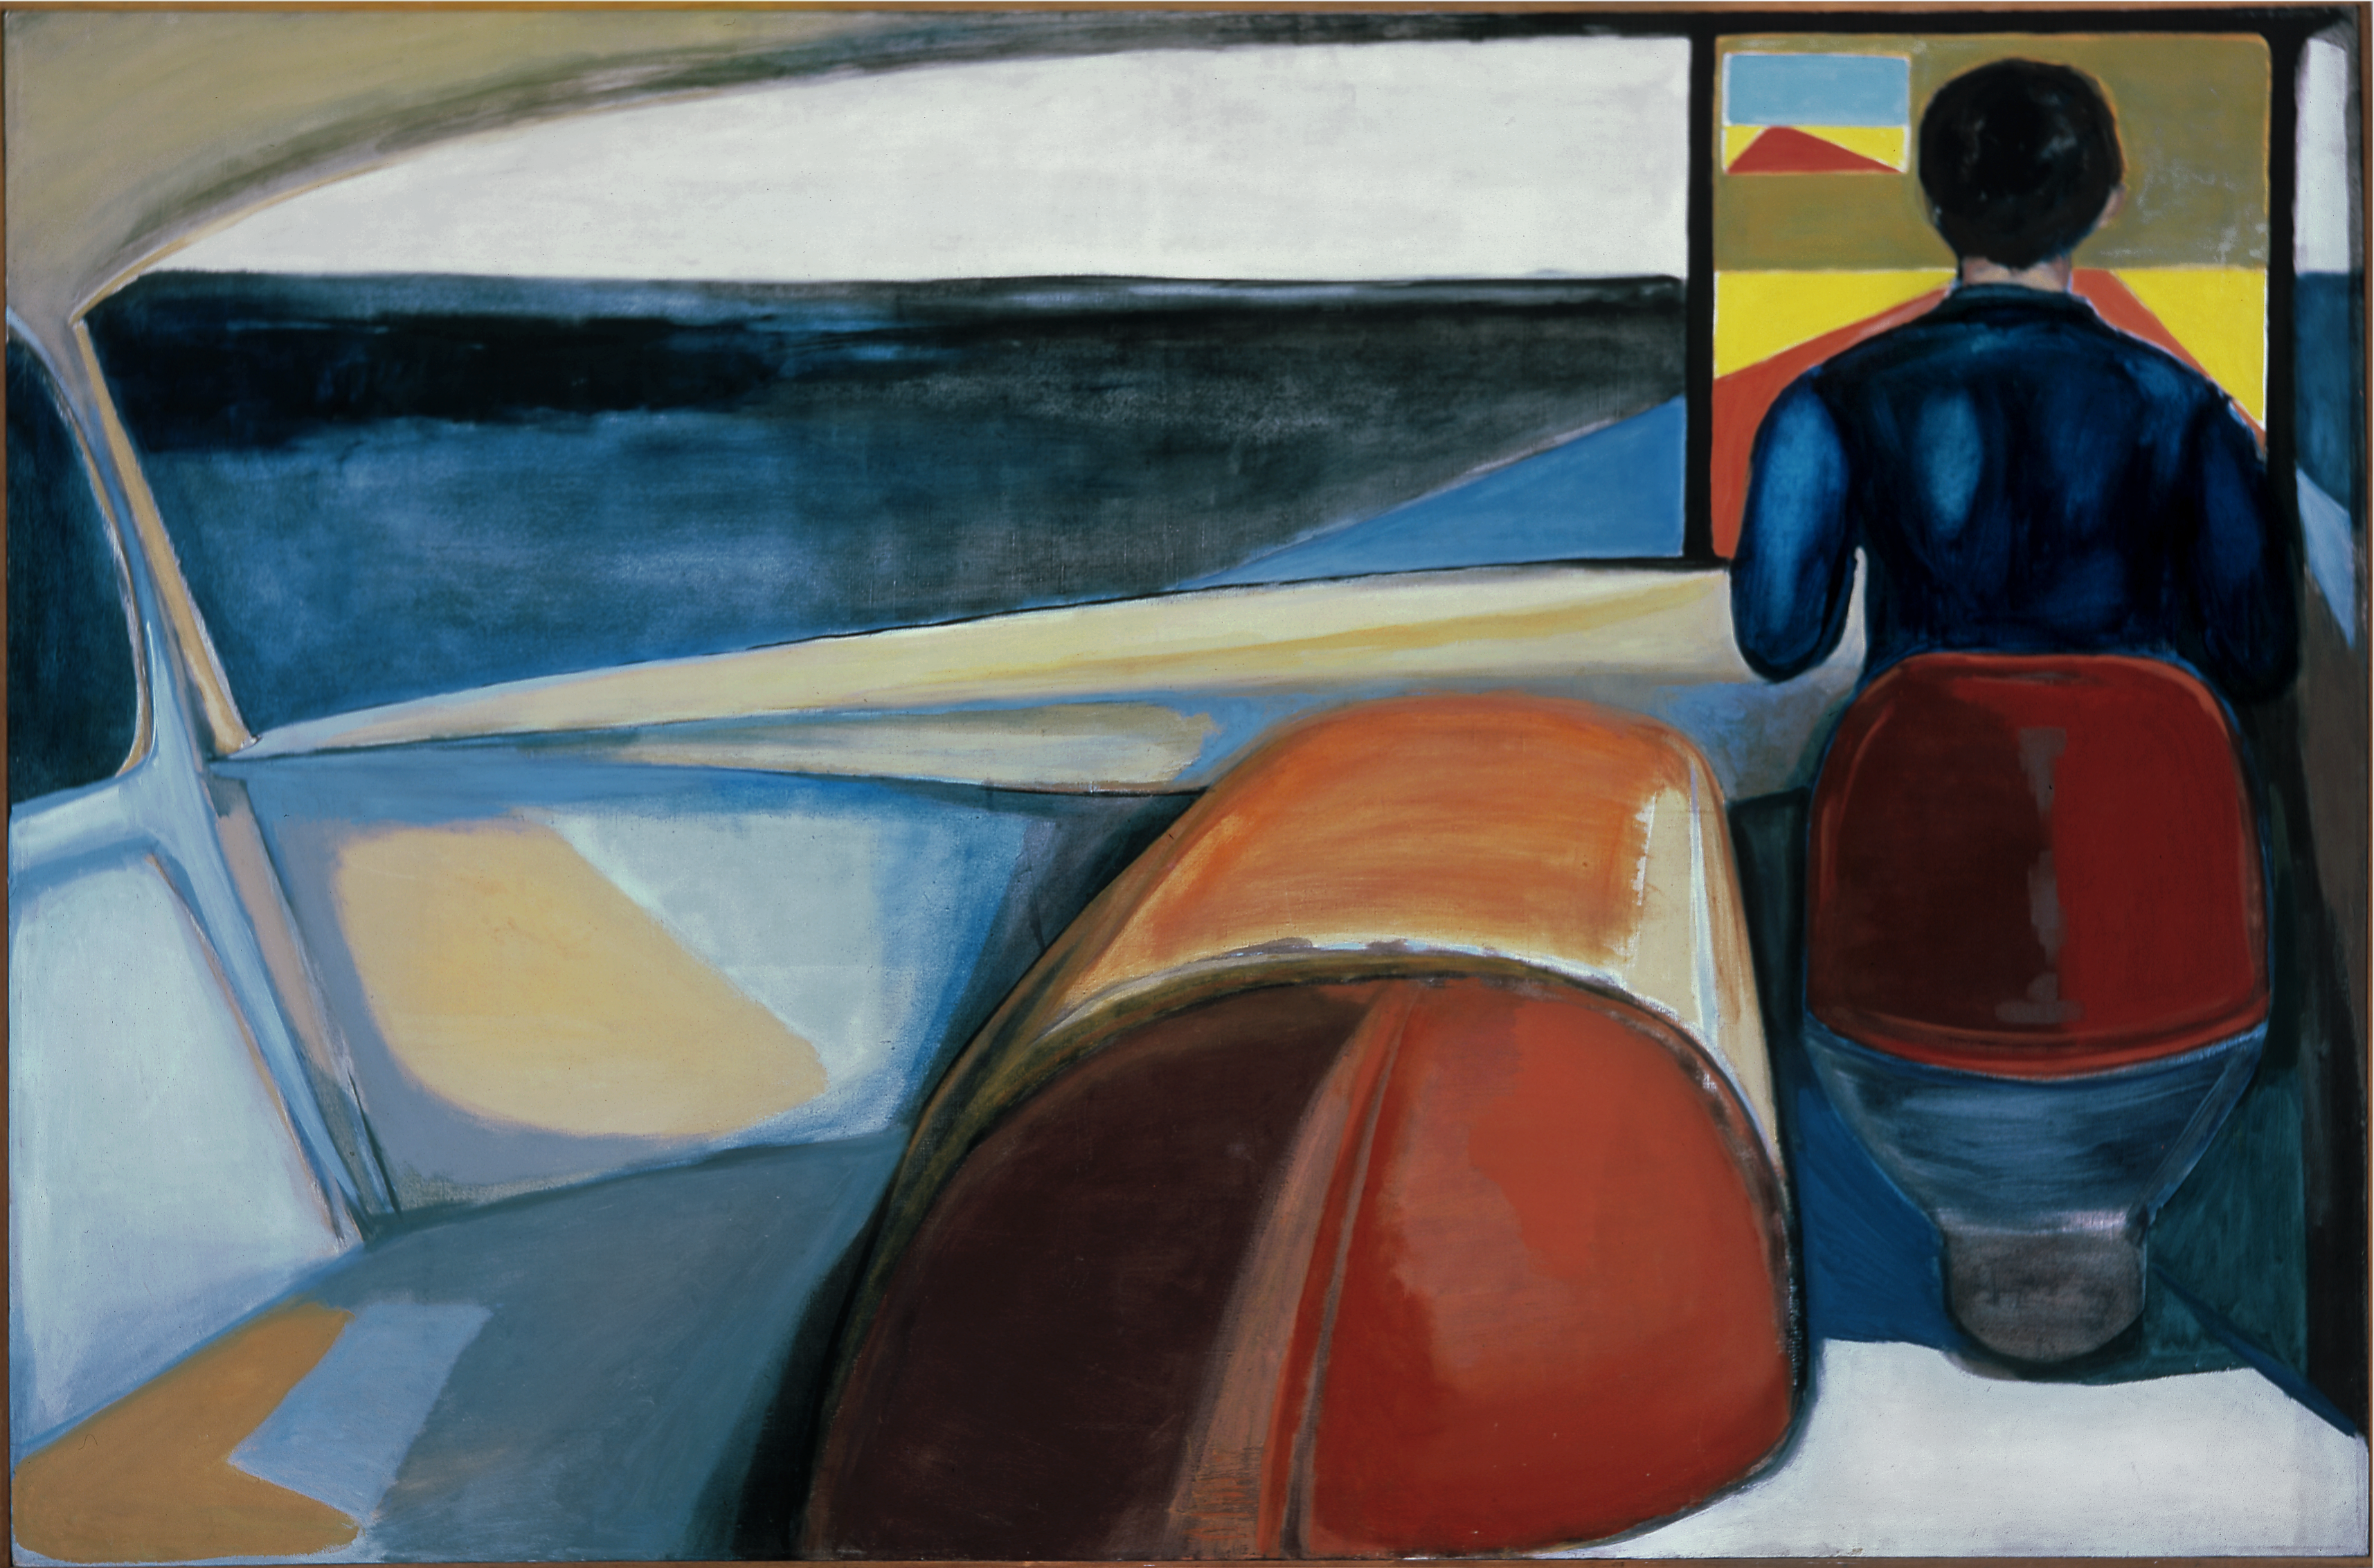 Šofér by Andrzej Wroblewski - 1956 - 132 × 200,5 cm 